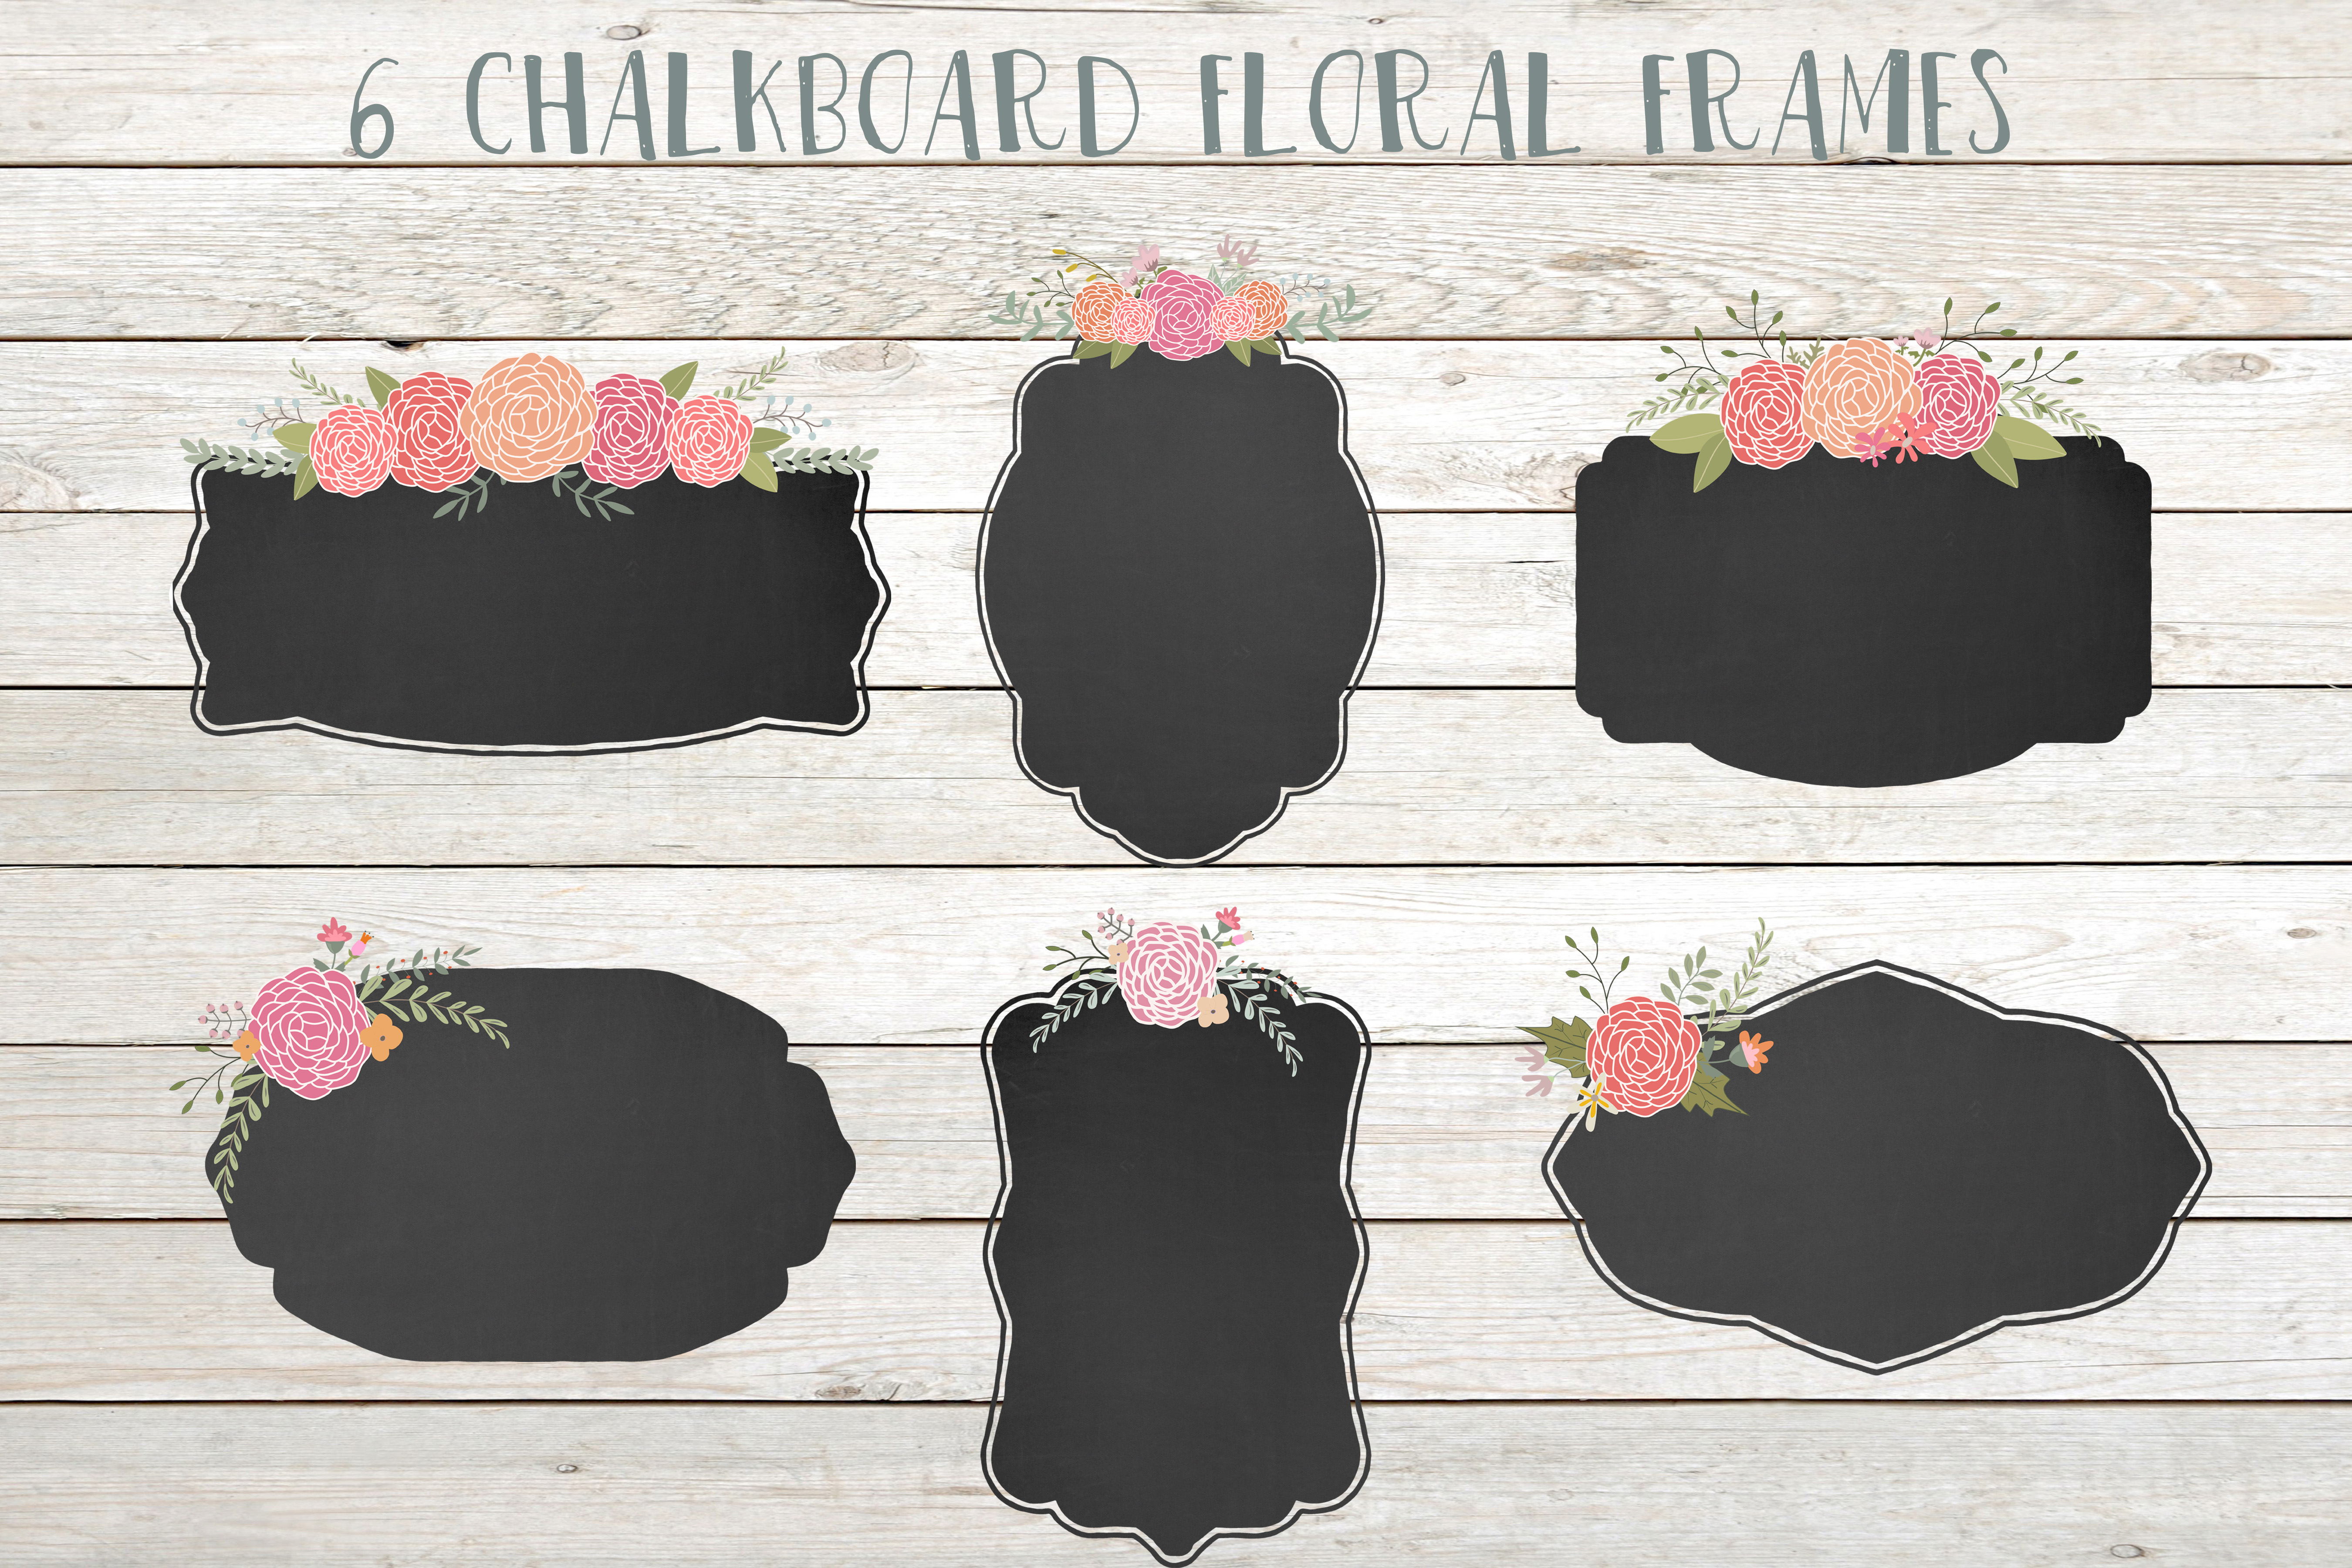 Chalkboard floral frames clip art ~ Illustrations on Creative Market